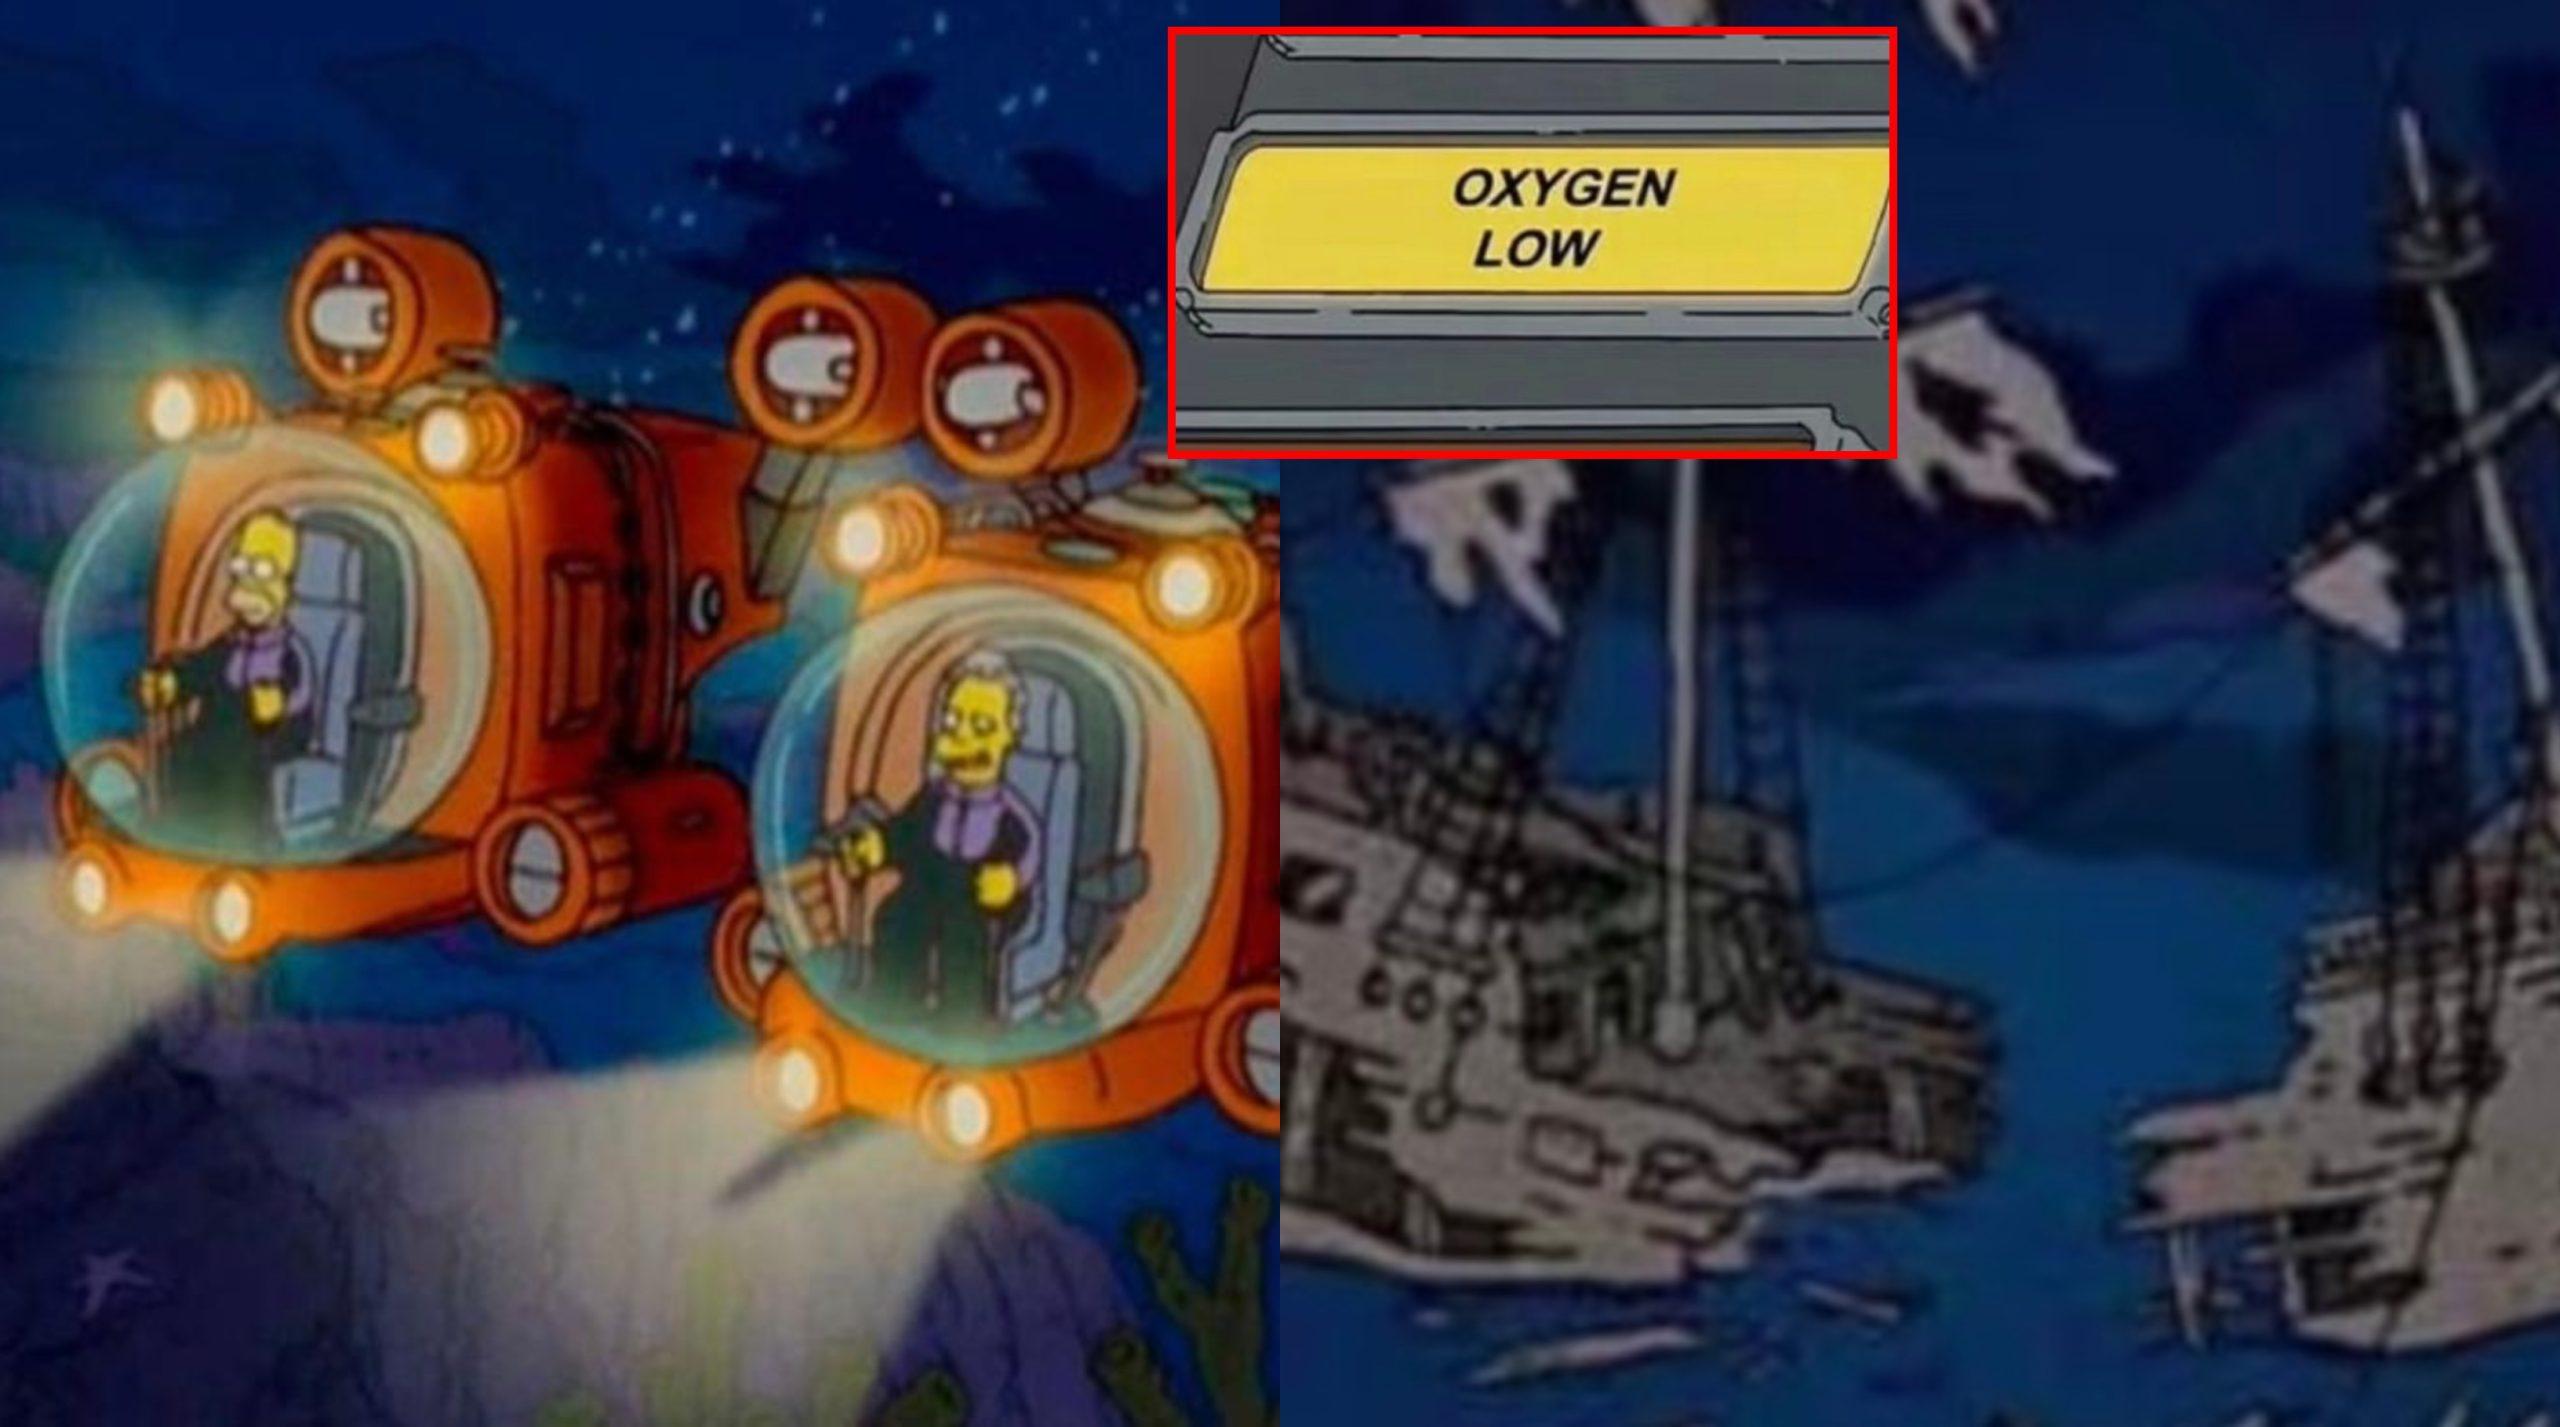 The Simpson có tập phim được cho là dự đoán vụ mất tích tàu ngầm Titan. (Ảnh: Internet)